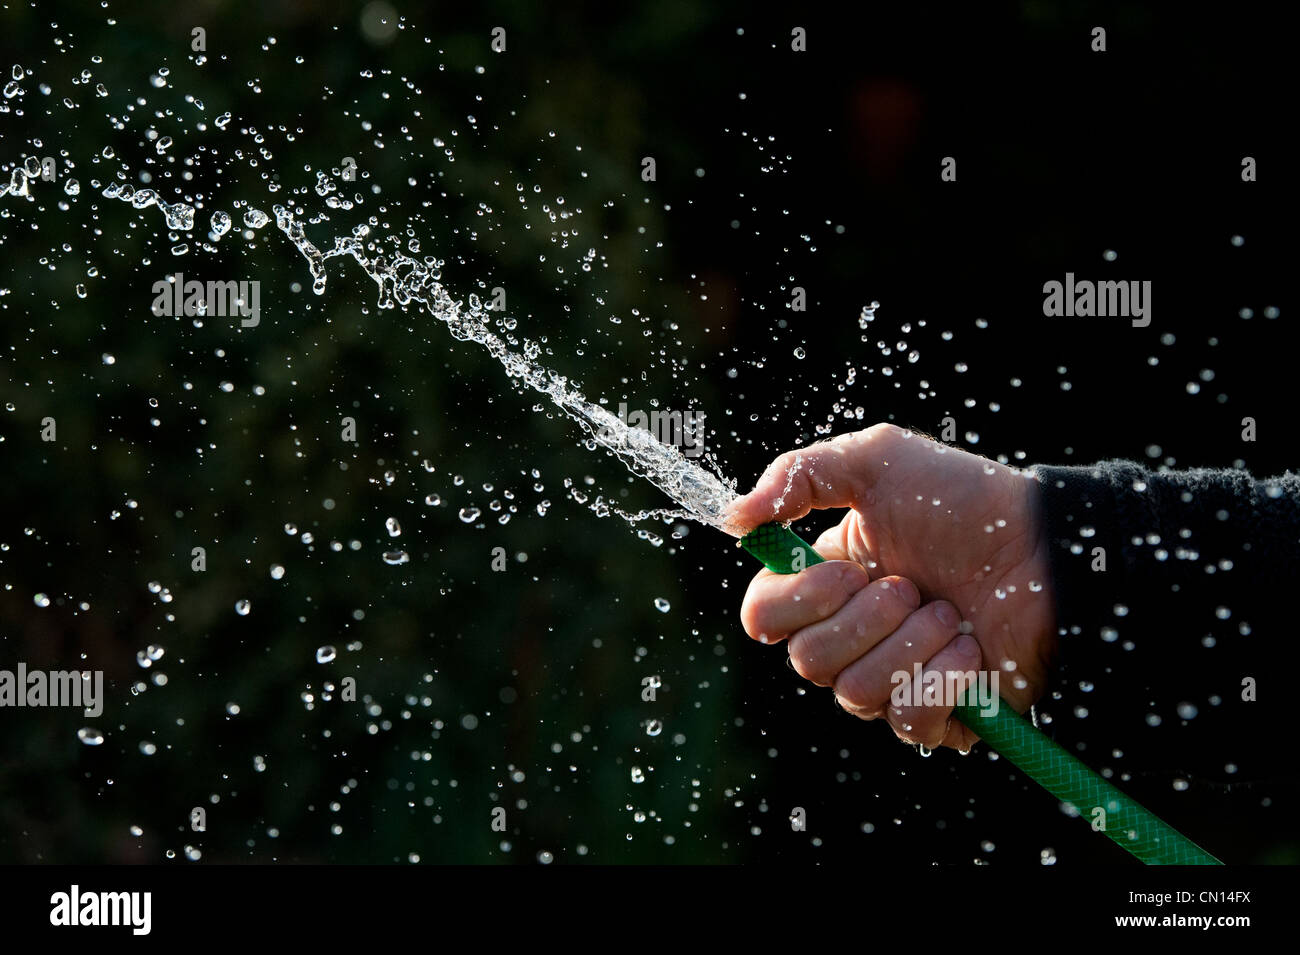 Rociado de agua a mano con manguera contra un fondo oscuro Foto de stock